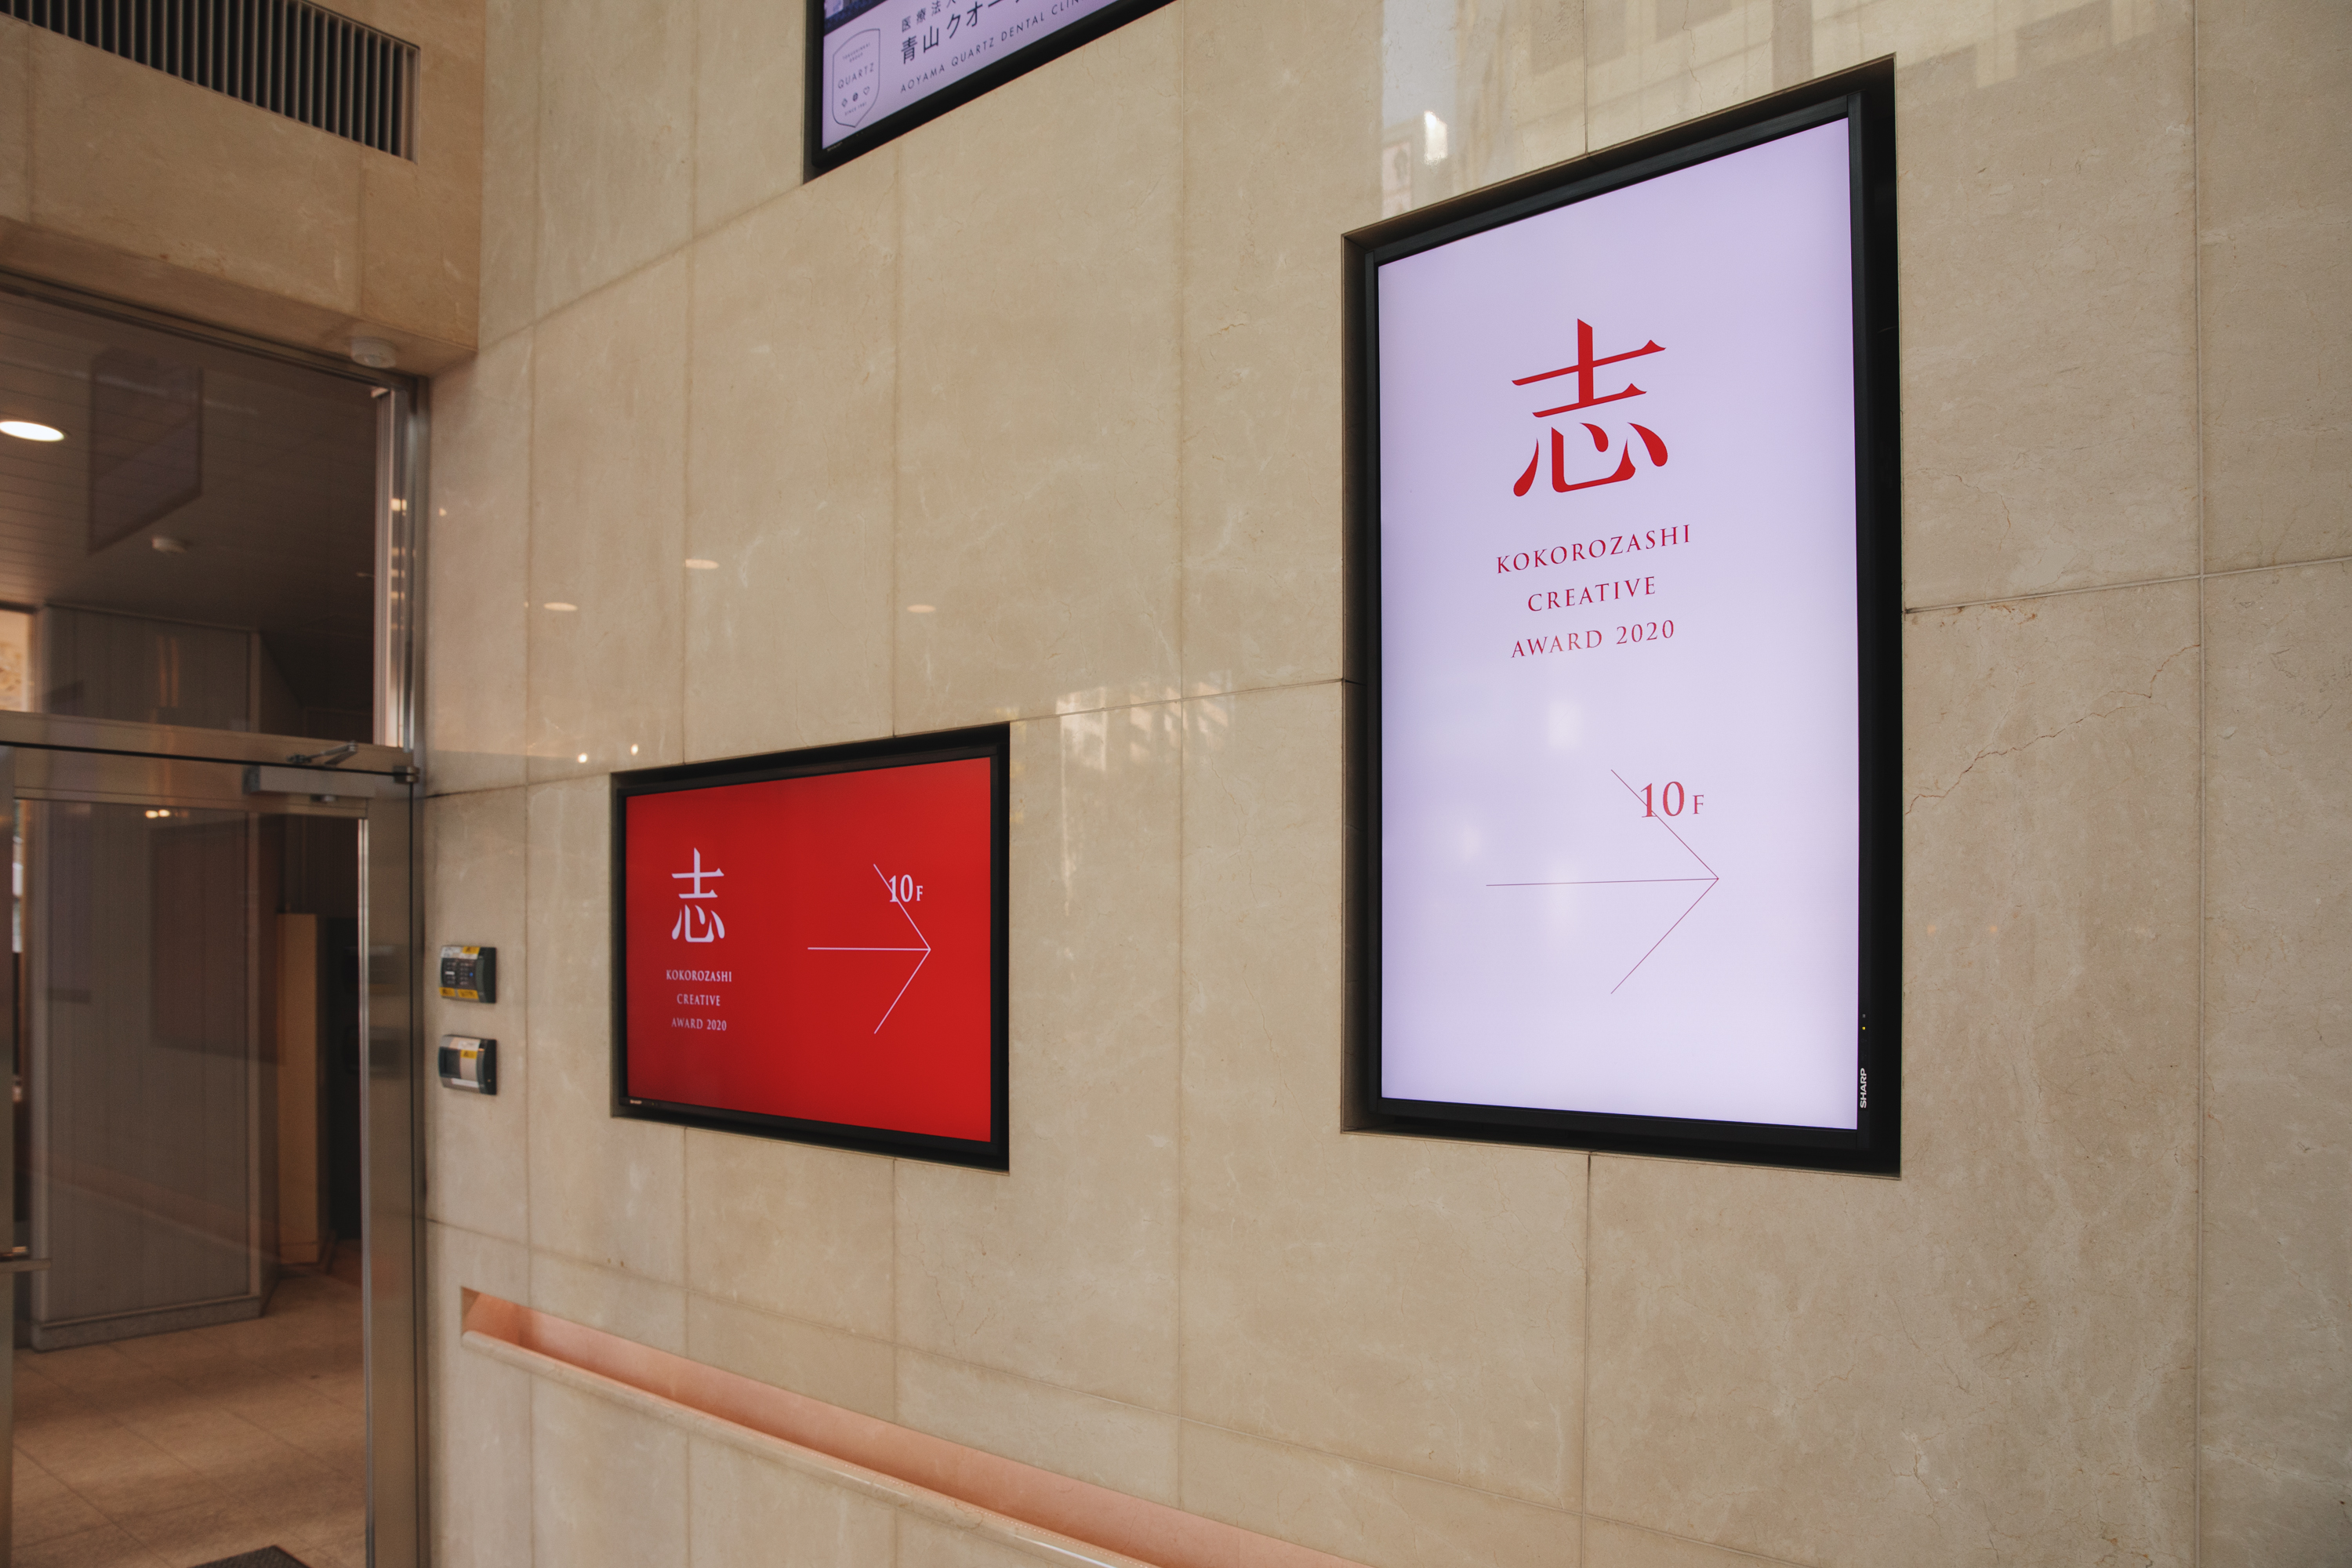 ▲会場は渋谷にあるQuartz Gallery。1Fのサイネージに流れる「志」の文字を目印に、会場に集います。